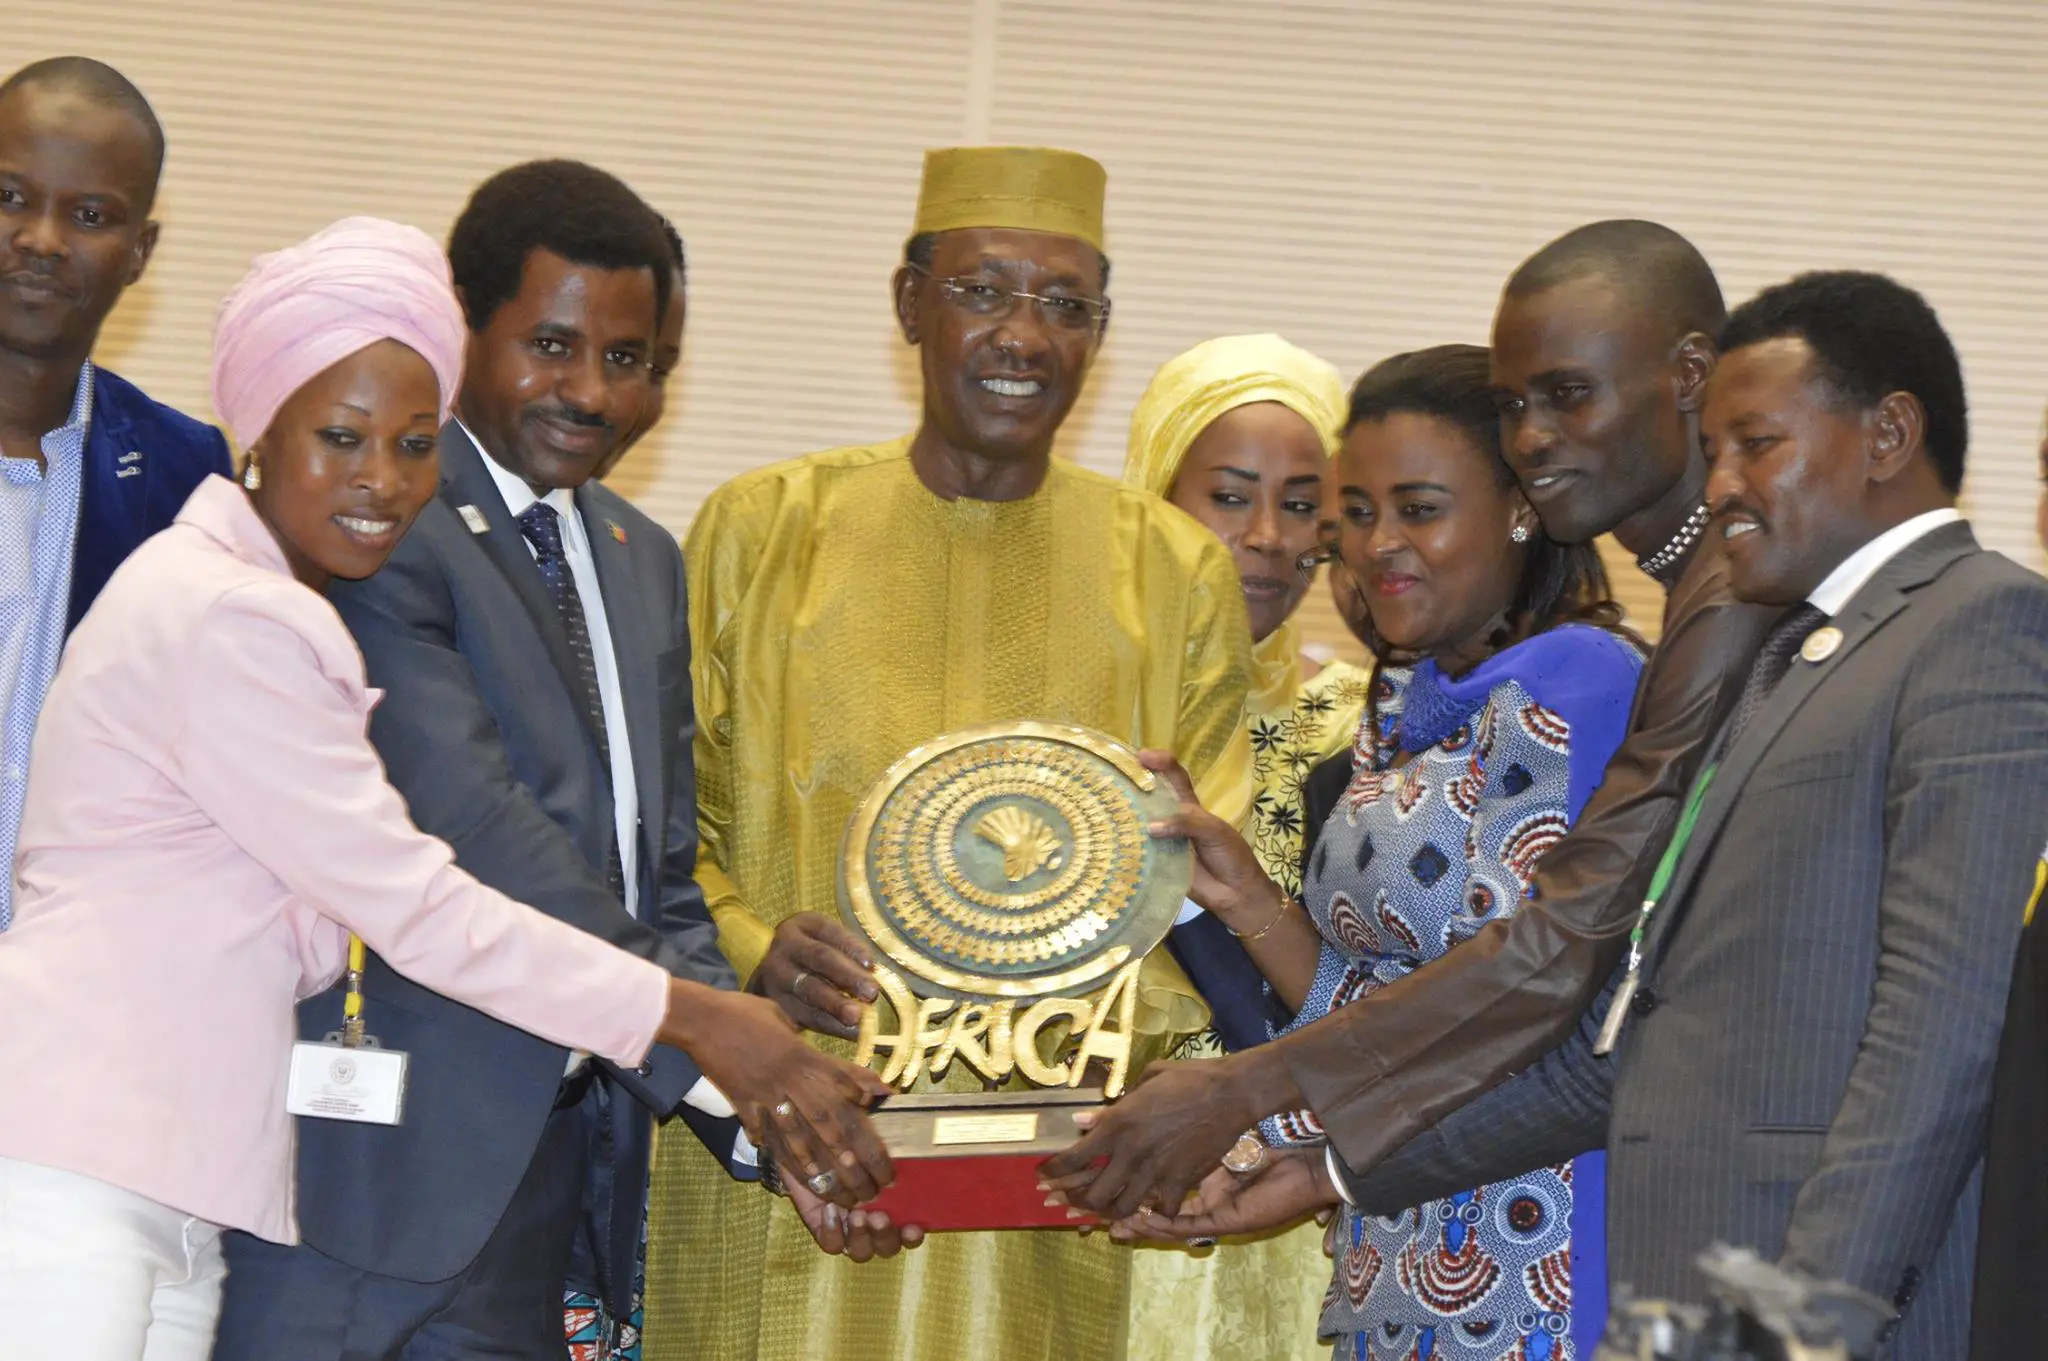 Tchad : La jeunesse africaine demande à Déby la création d'un passeport spécial étudiant